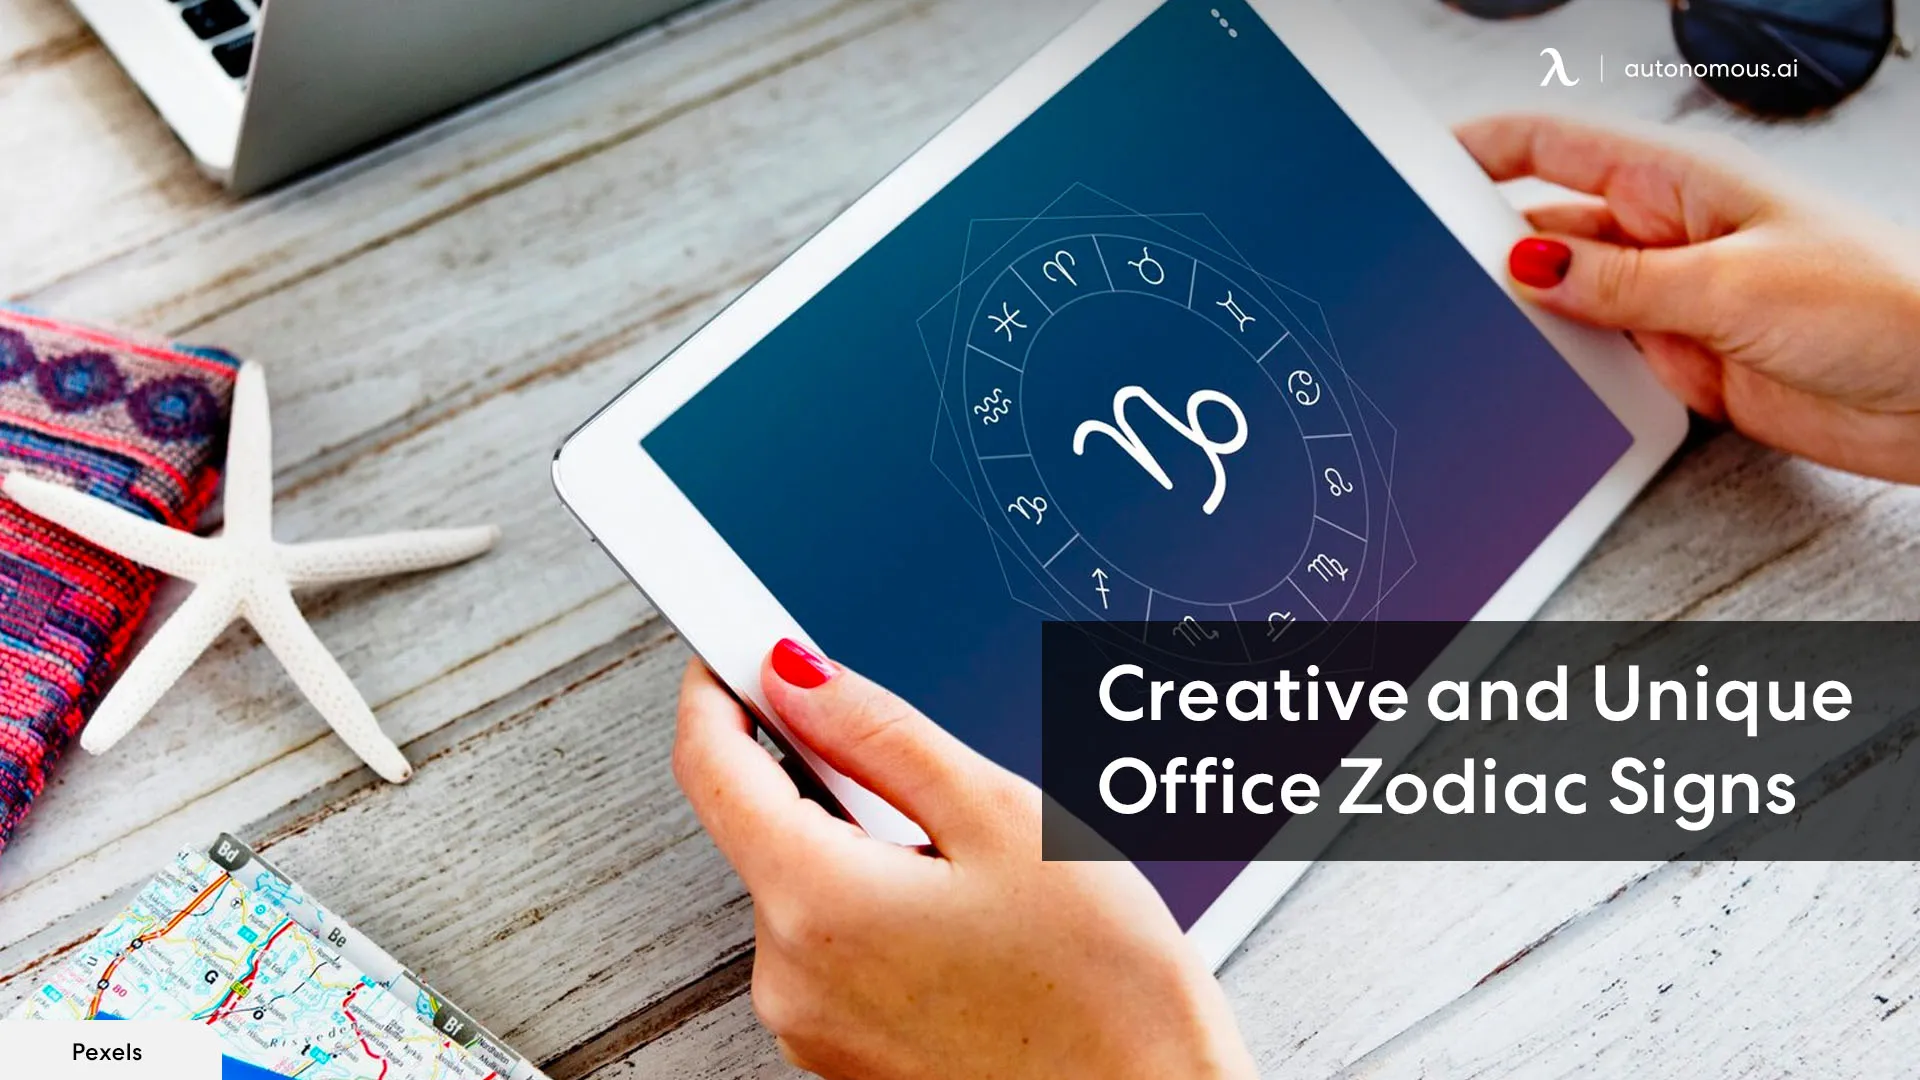 Creative and Unique Office Zodiac Signs to Decor